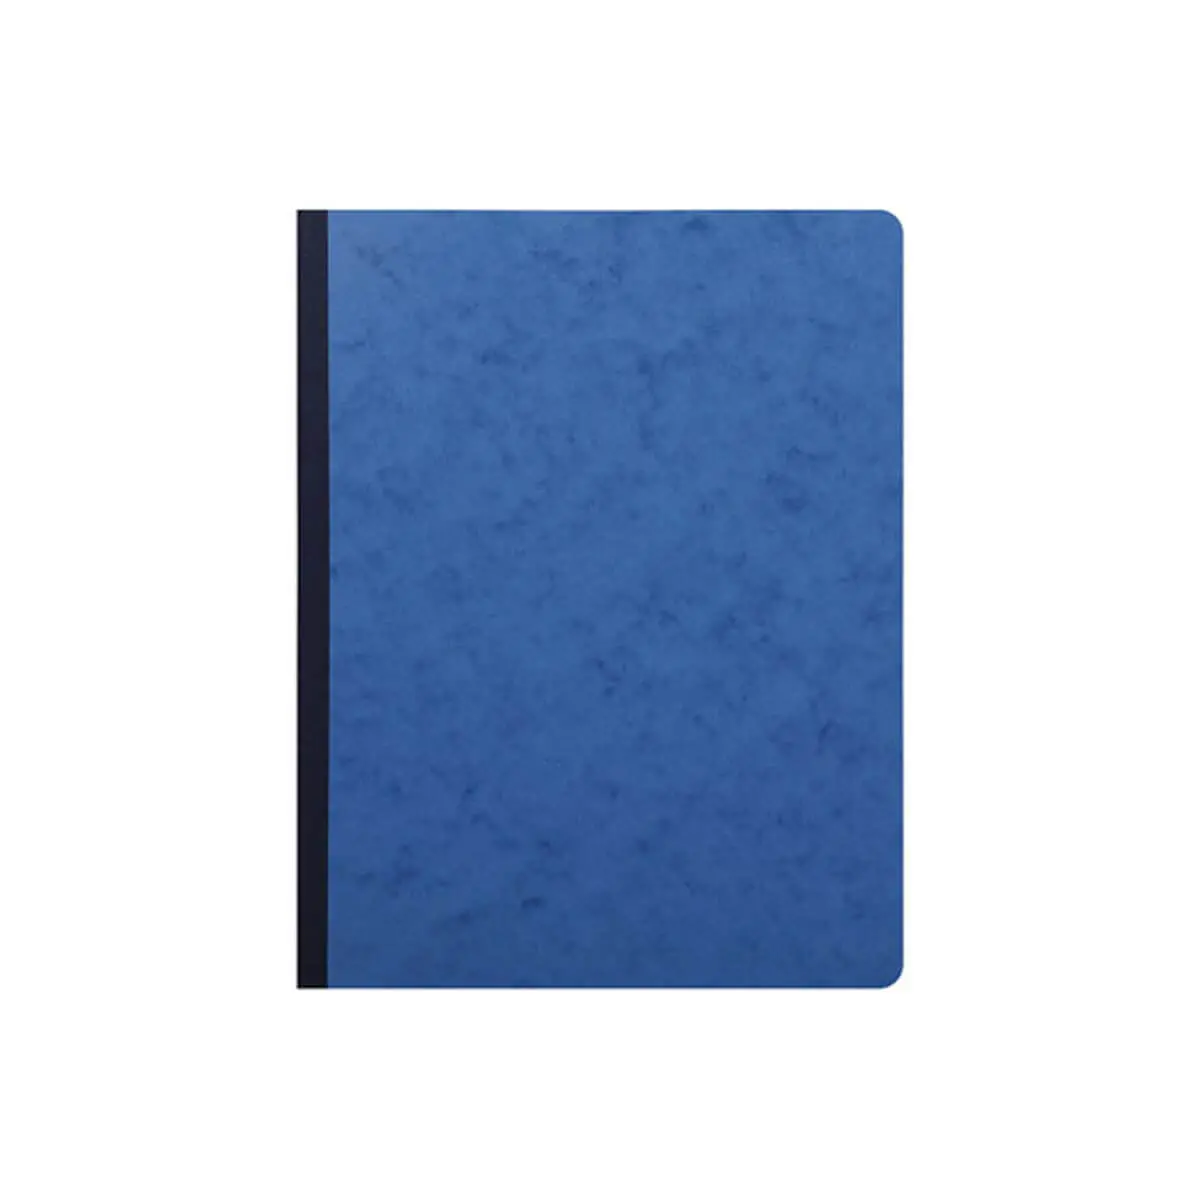 Piqûre 32x25cm 6 colonnes sur 1 page 31 lignes 80 pages - Bleu - EXACOMPTA photo du produit